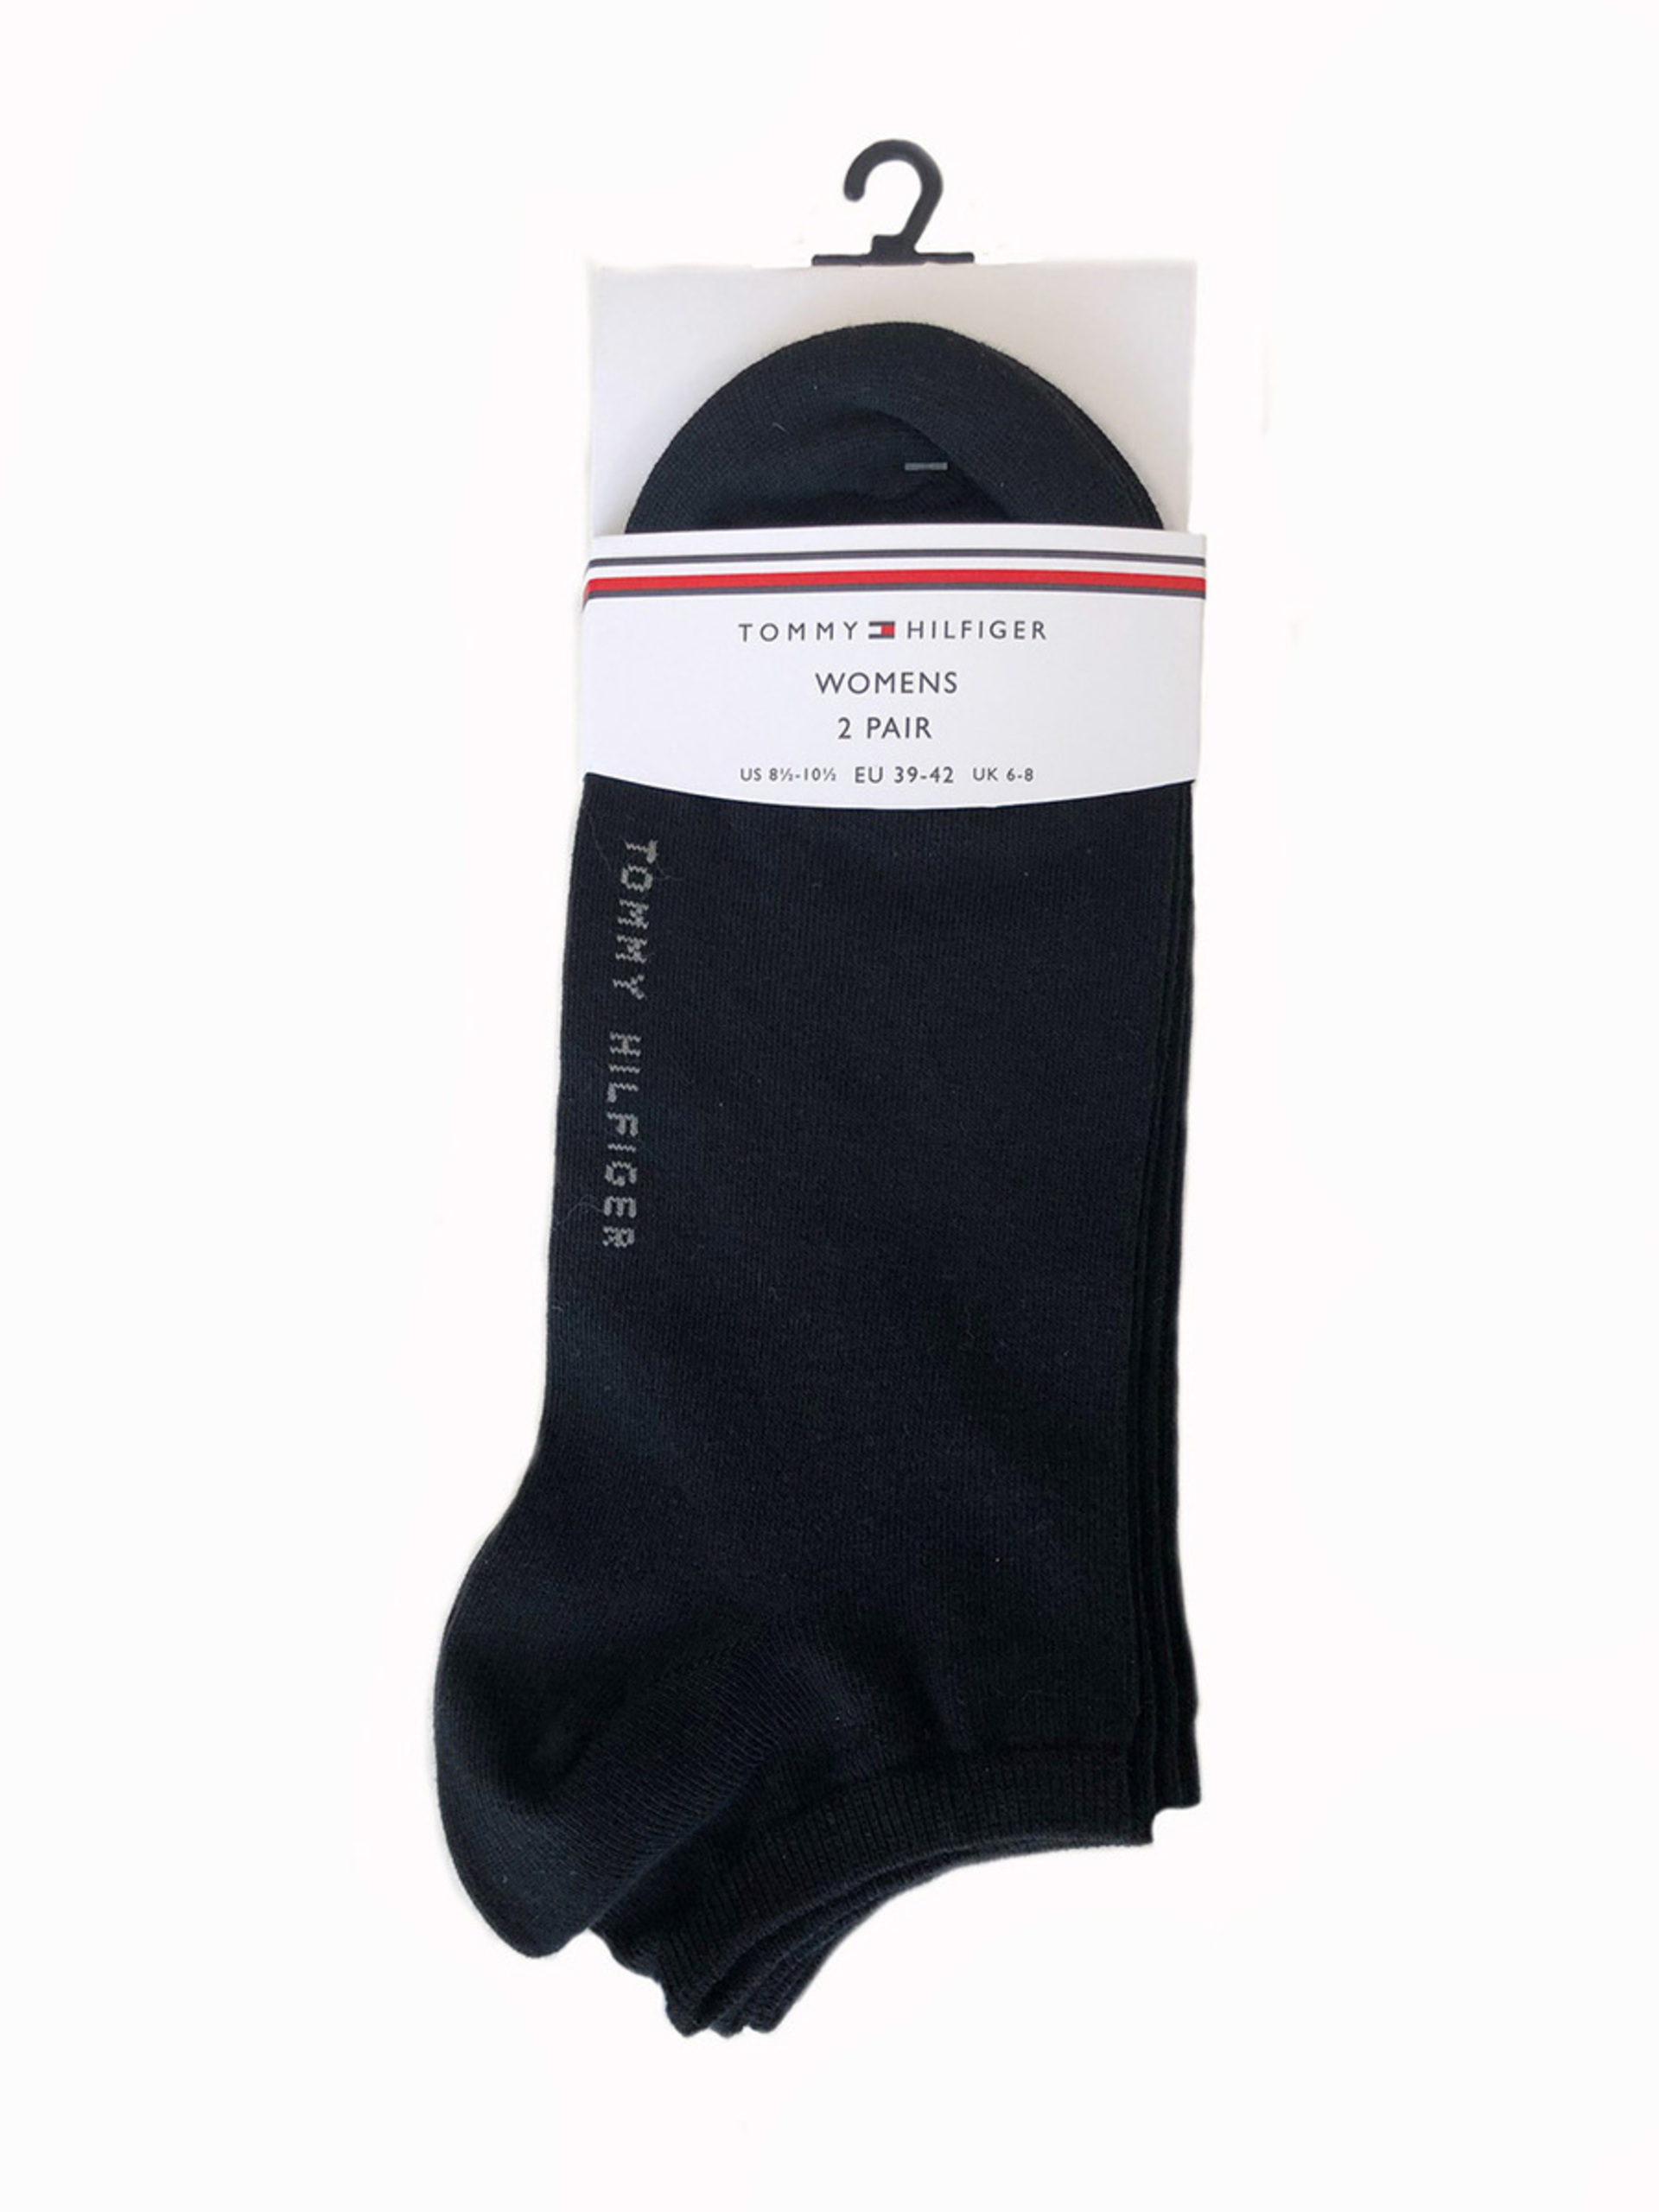 Tommy Hilfiger dámské černé ponožky 2 pack - 39/42 (200)